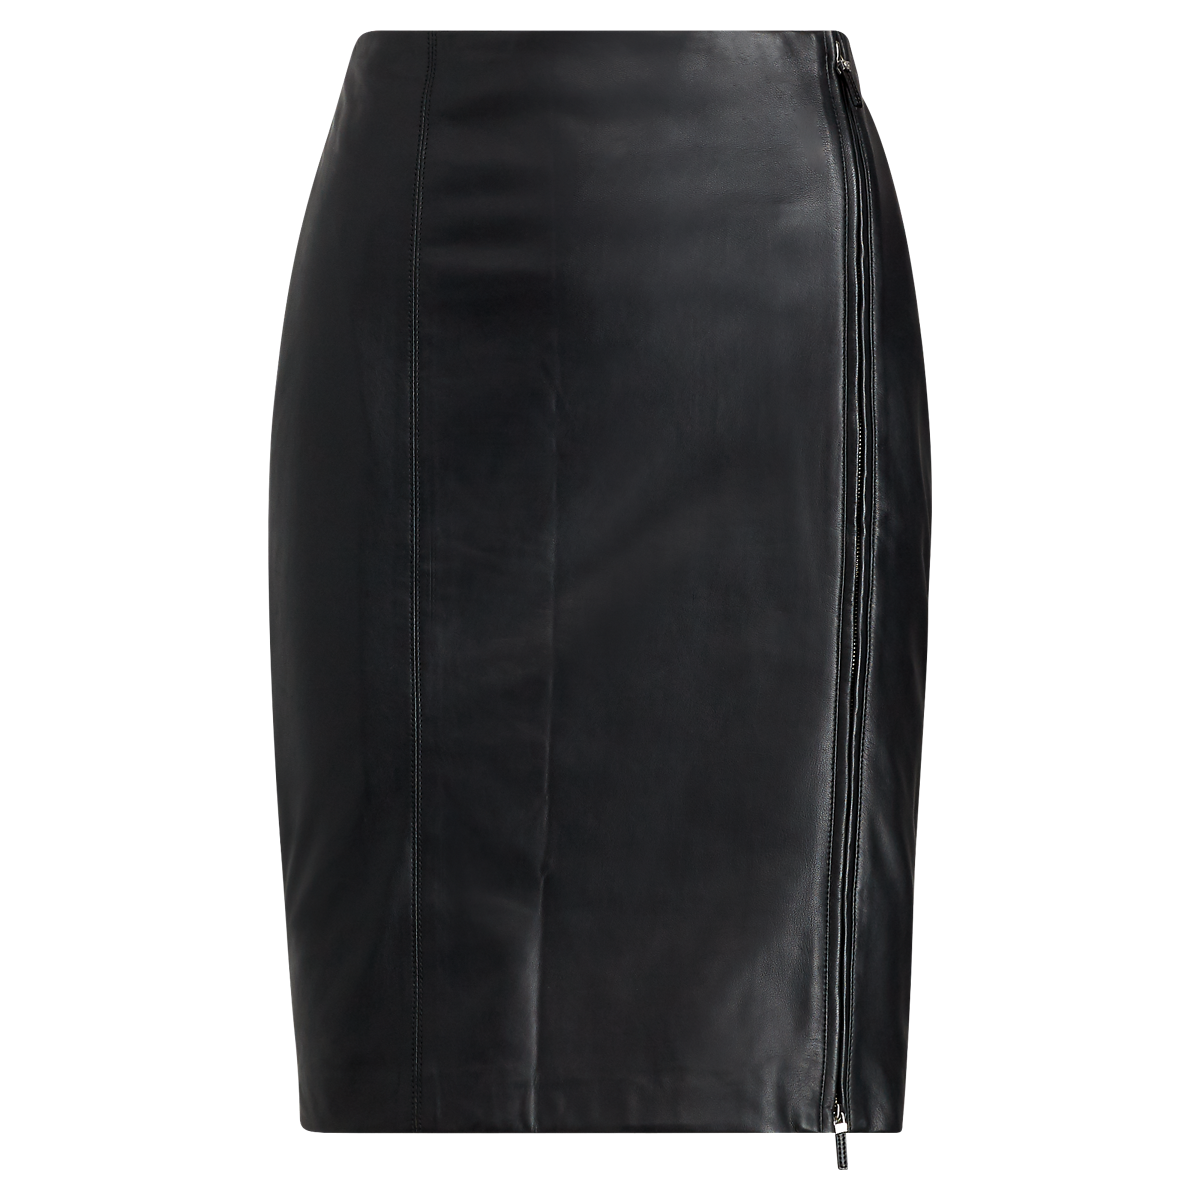 Top 73+ imagen ralph lauren leather skirt - Thptnganamst.edu.vn